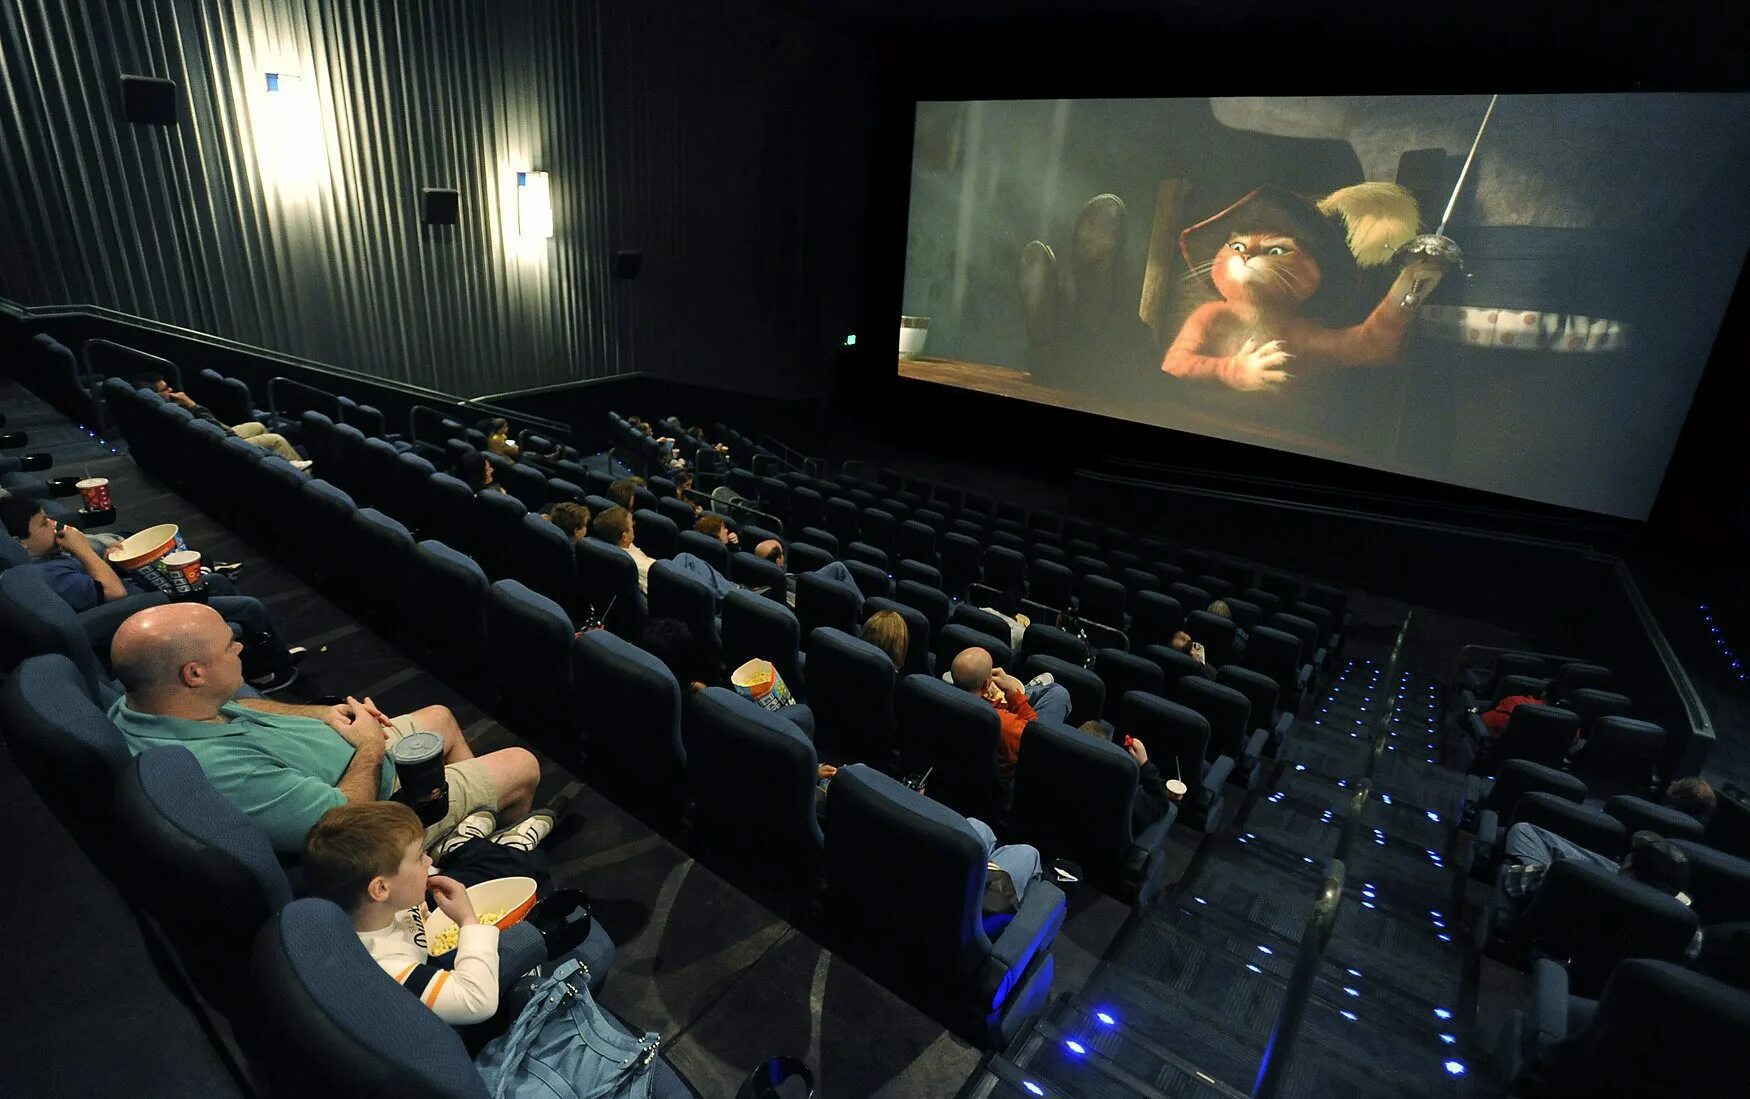 Кинотеатр фокус билеты. Зал кинотеатра. Люди в кинотеатре. Кинотеатр внутри. Кинотеатр зал экран.